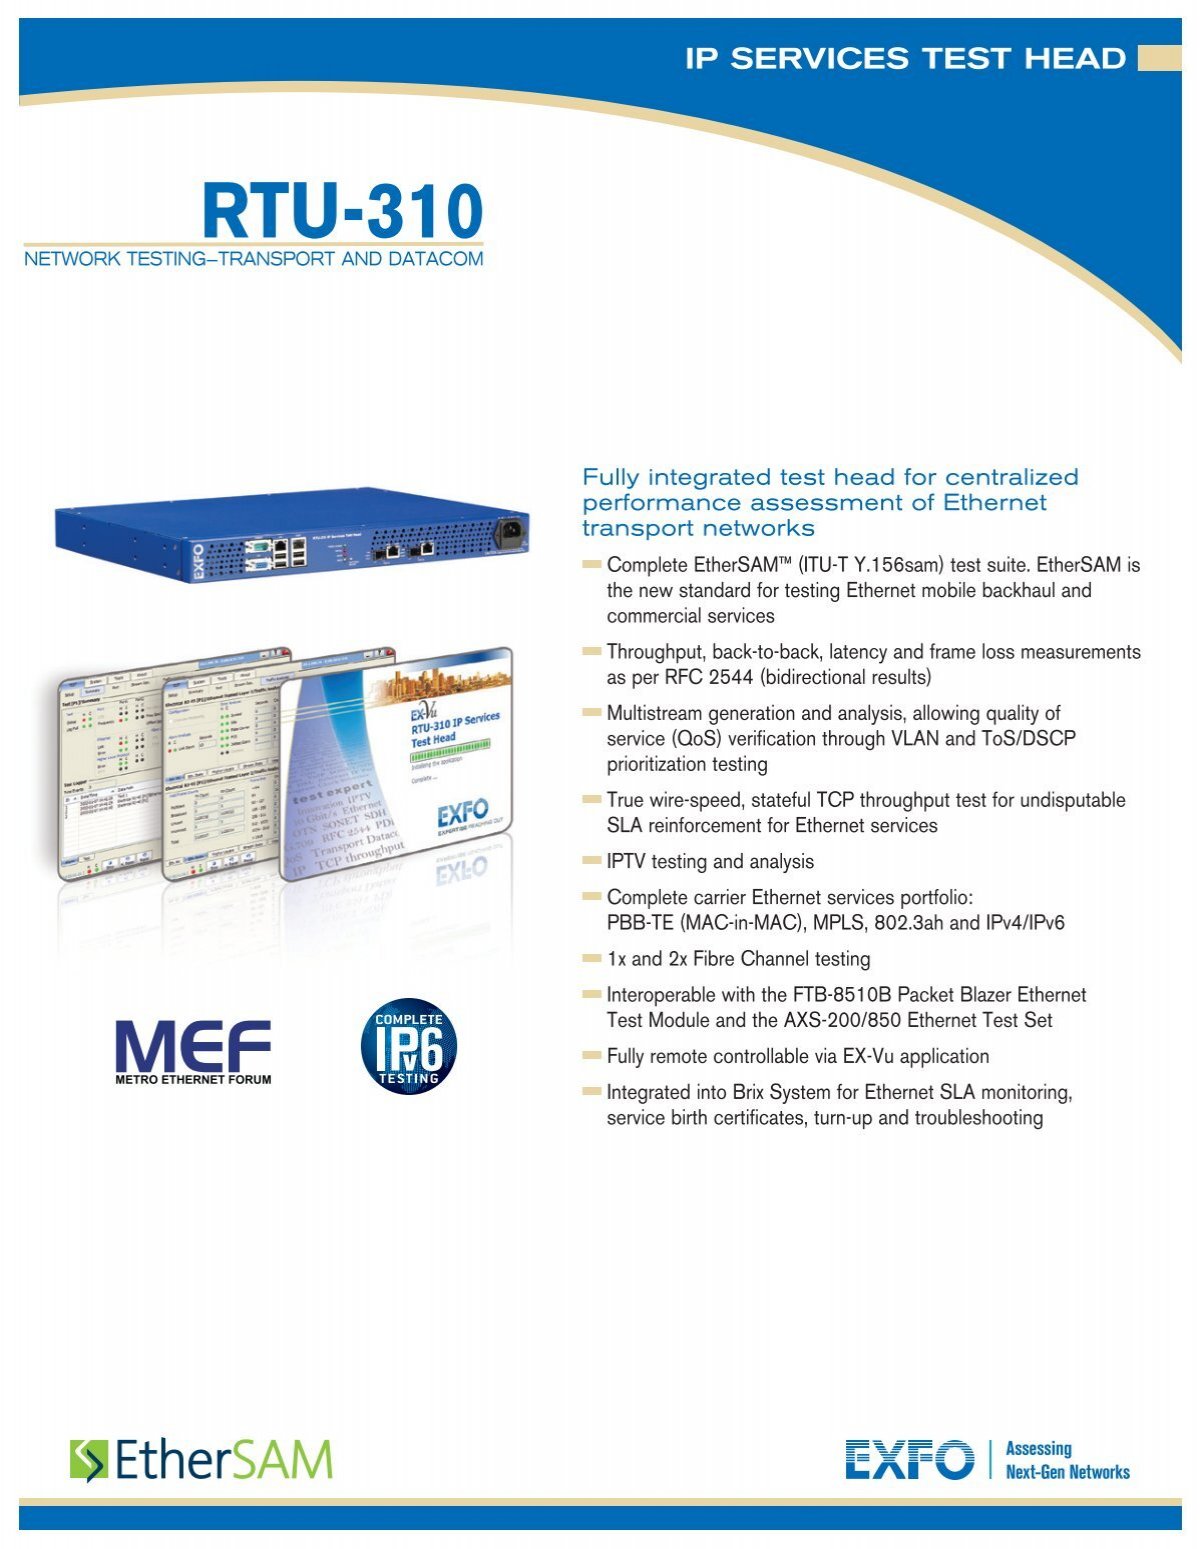 RTU-310 IP Services Test Head